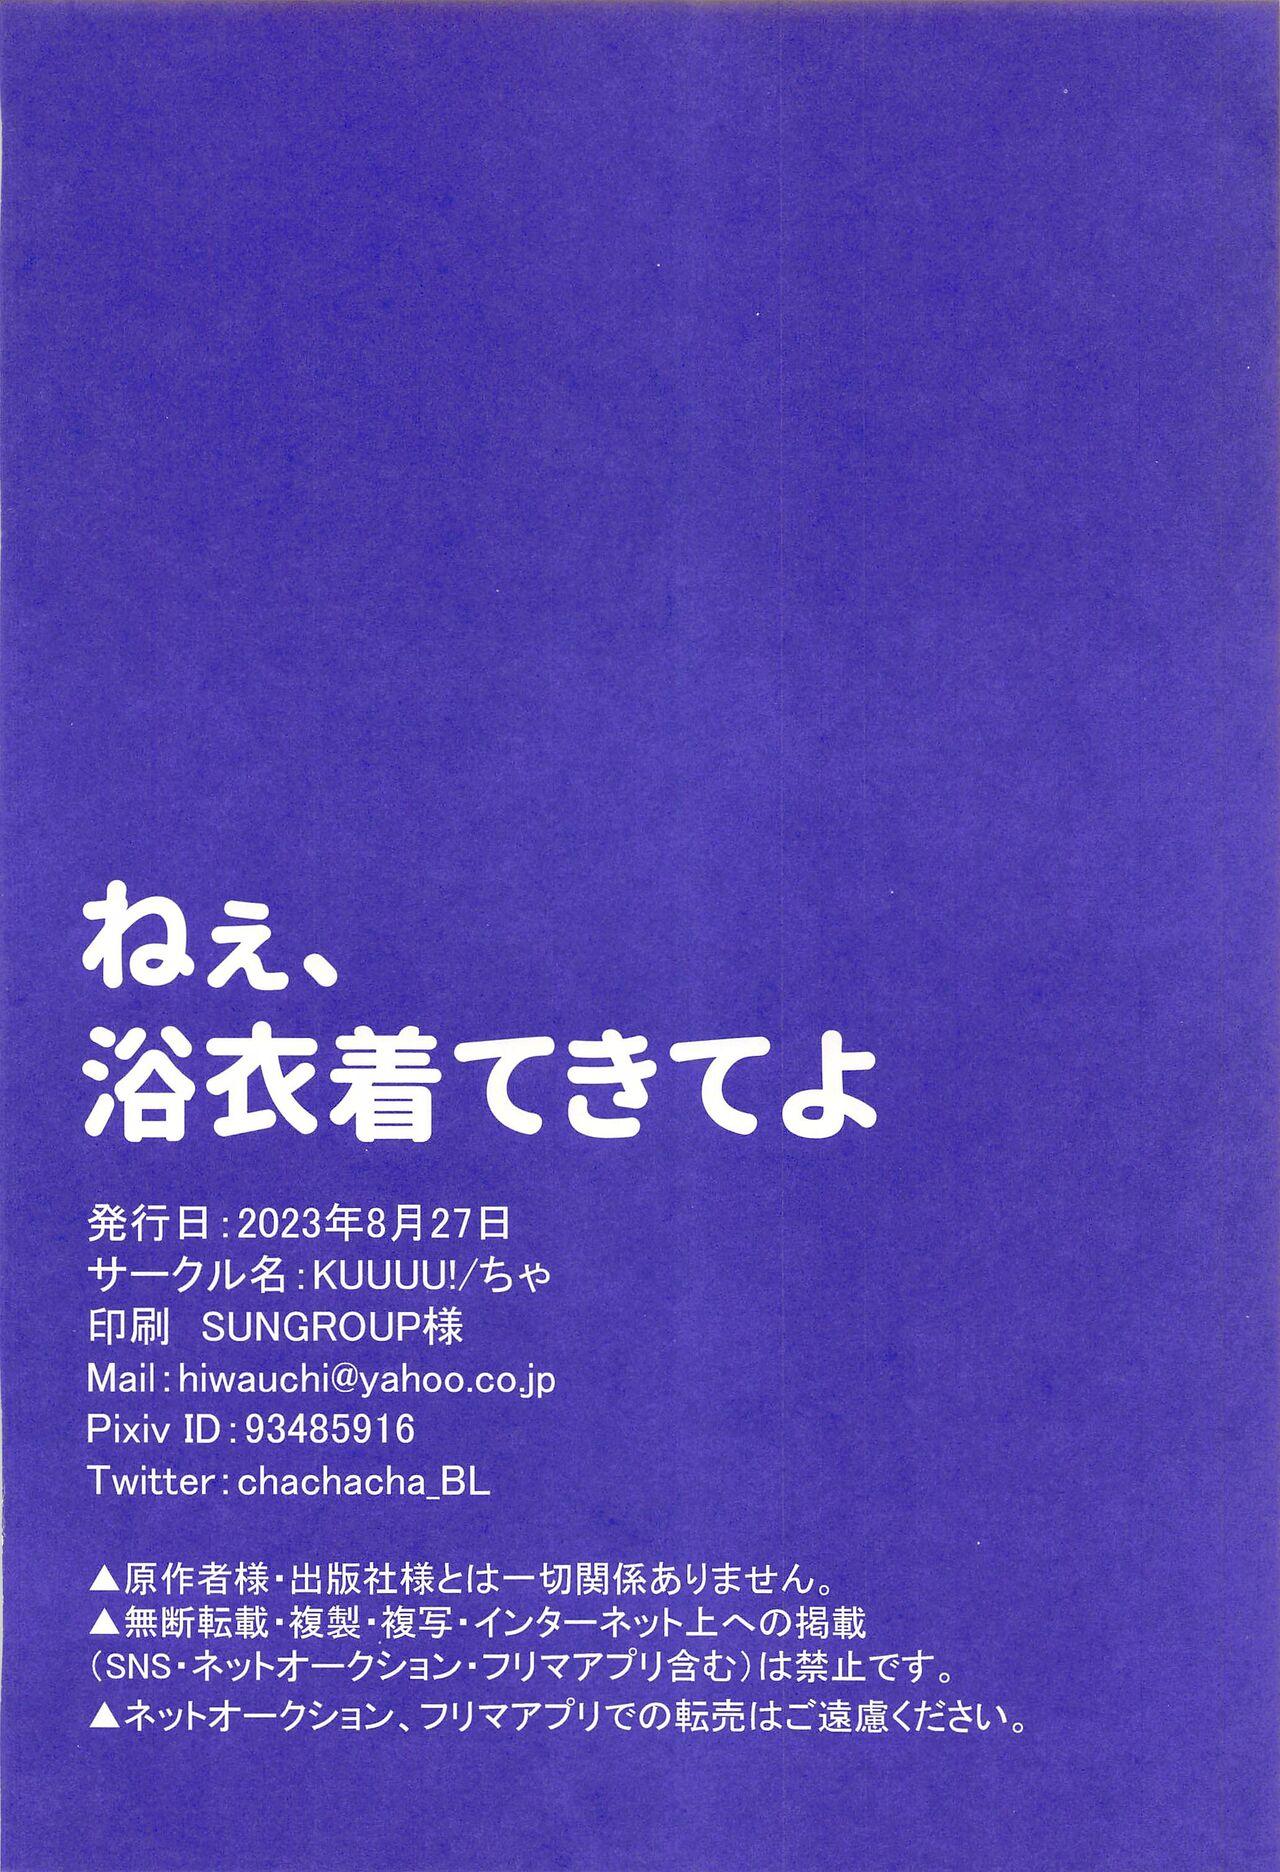 Secret Nee, Yukata Kite kite yo - Blue lock De Quatro - Page 25